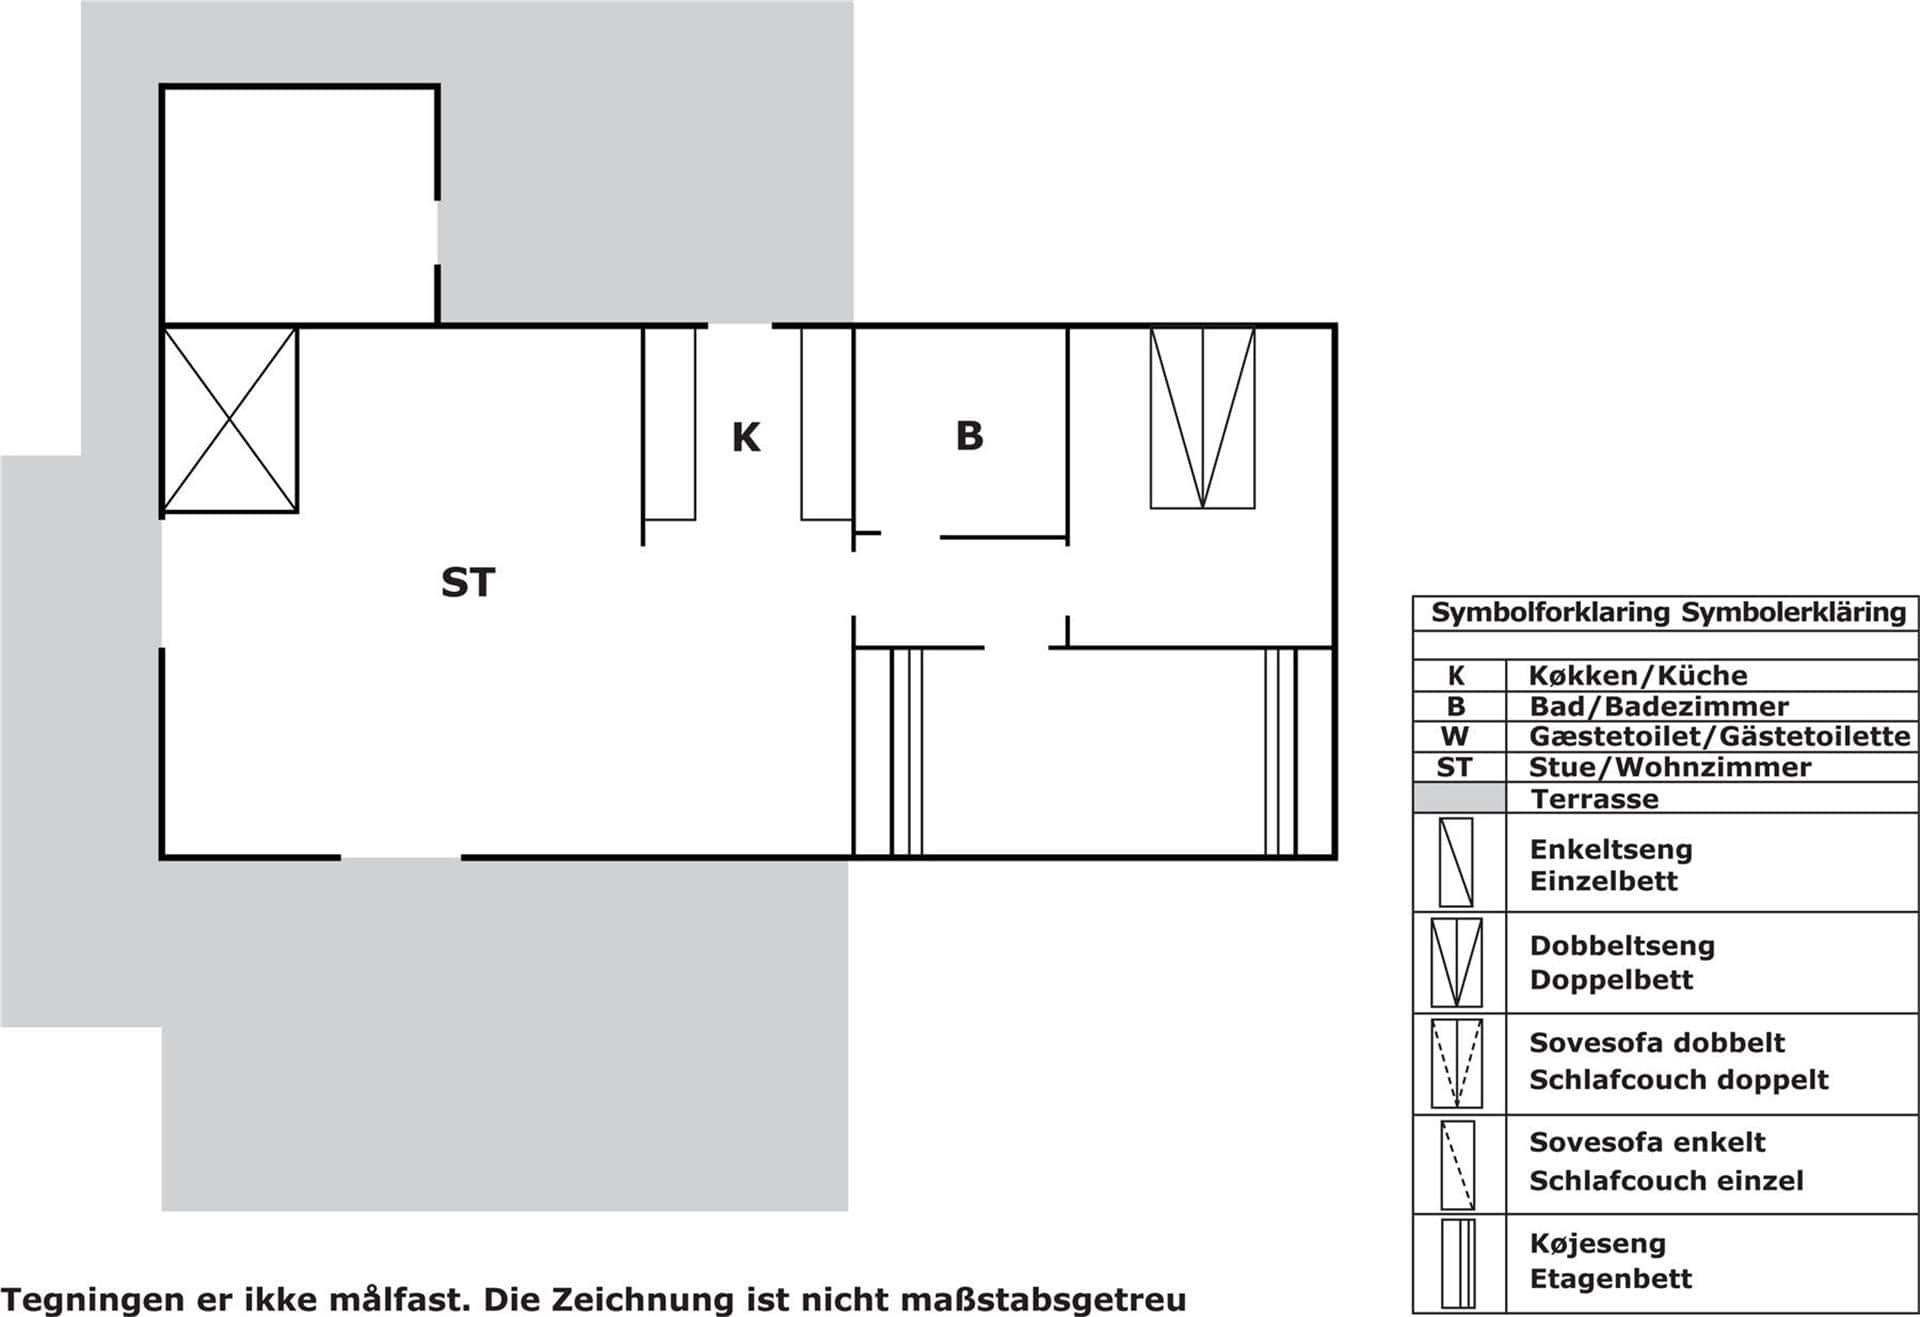 Innenausstattung 2-3 Ferienhaus M65299, Birkholmvej 2, DK - 5600 Faaborg